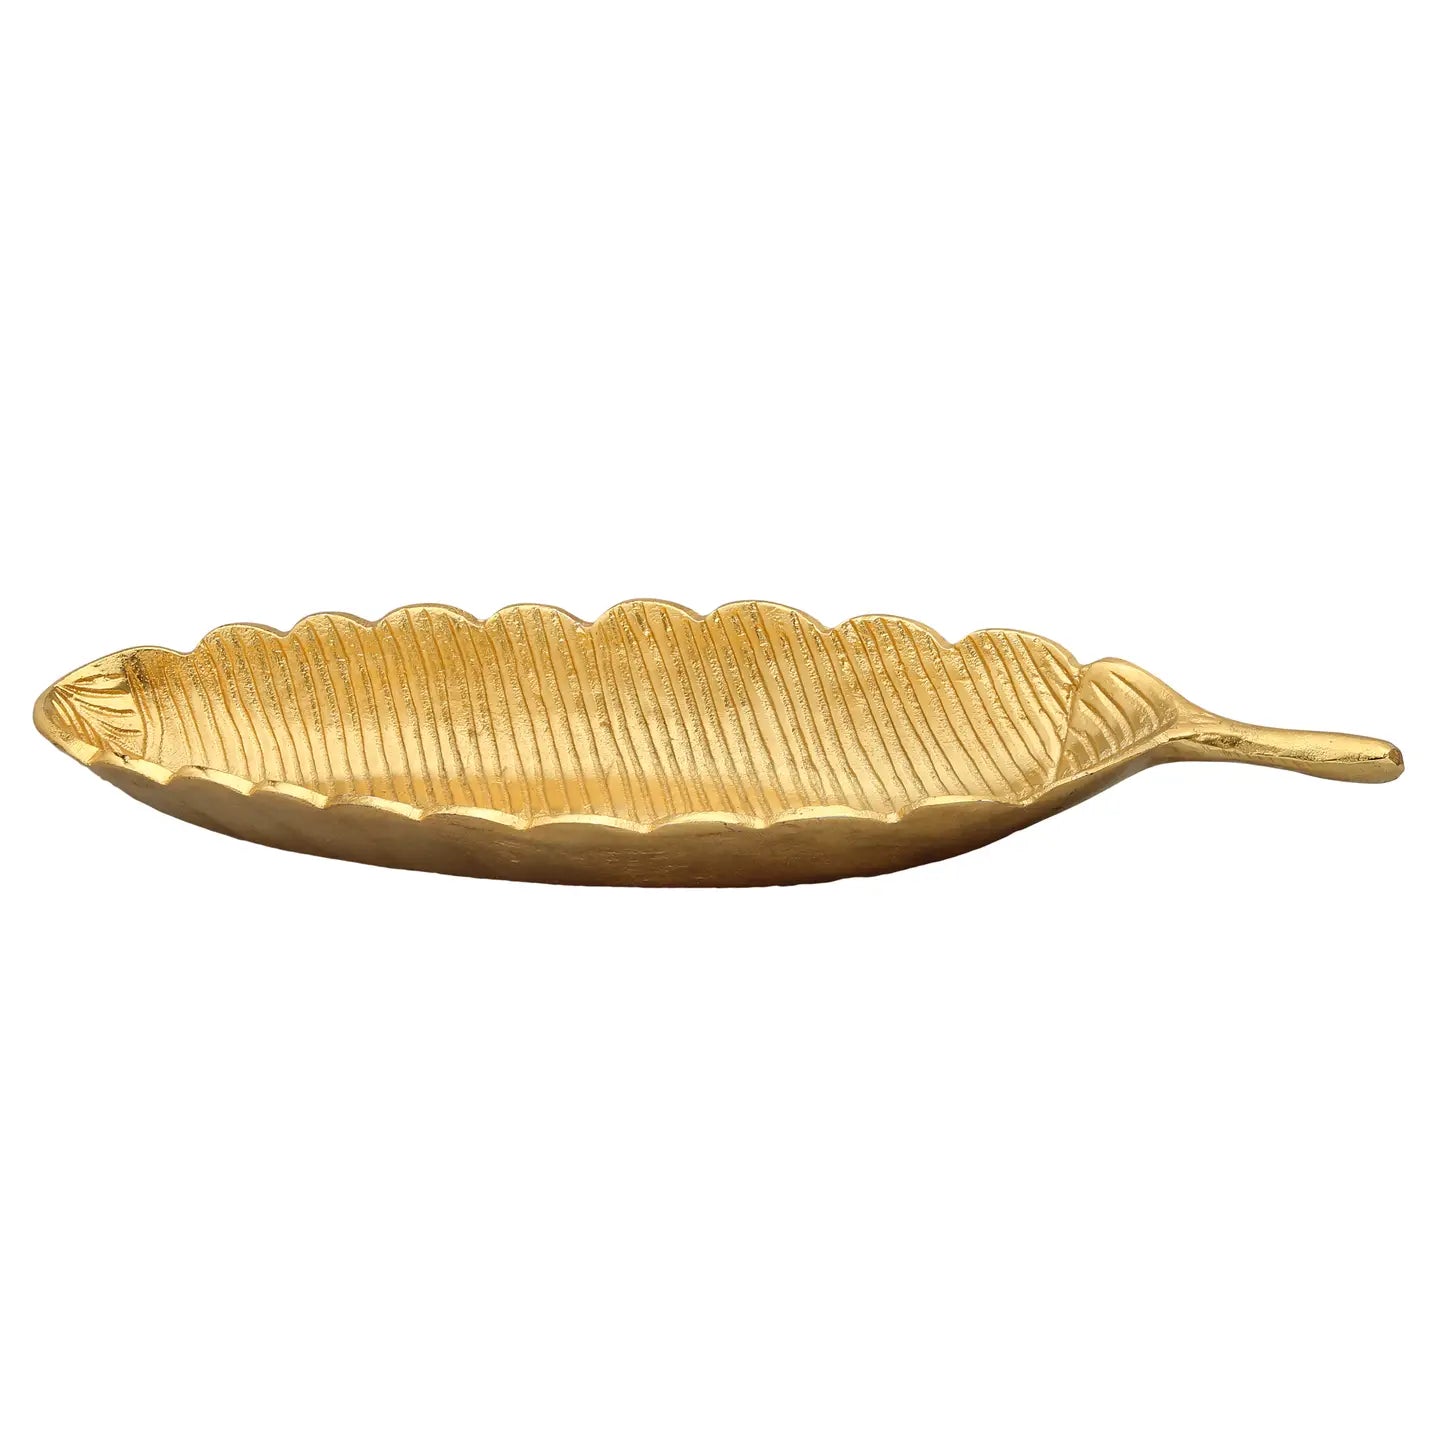 13" Gold Leaf Shaped Platter with Vein Design